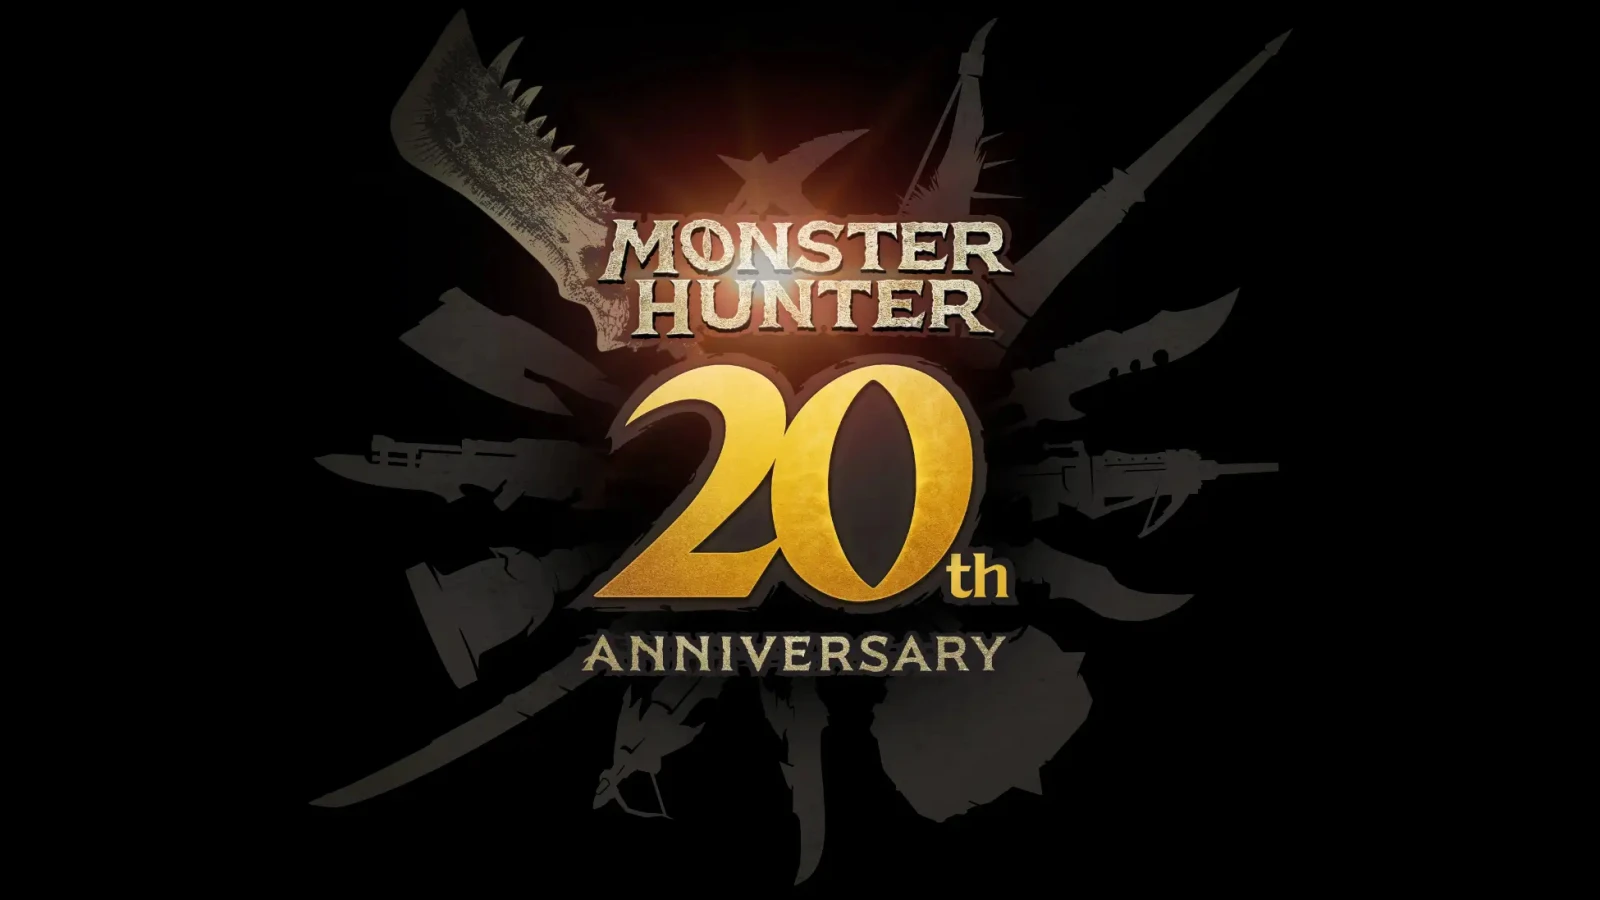 《怪物猎人》20周年特别节目将于北京时间3月12日晚播出